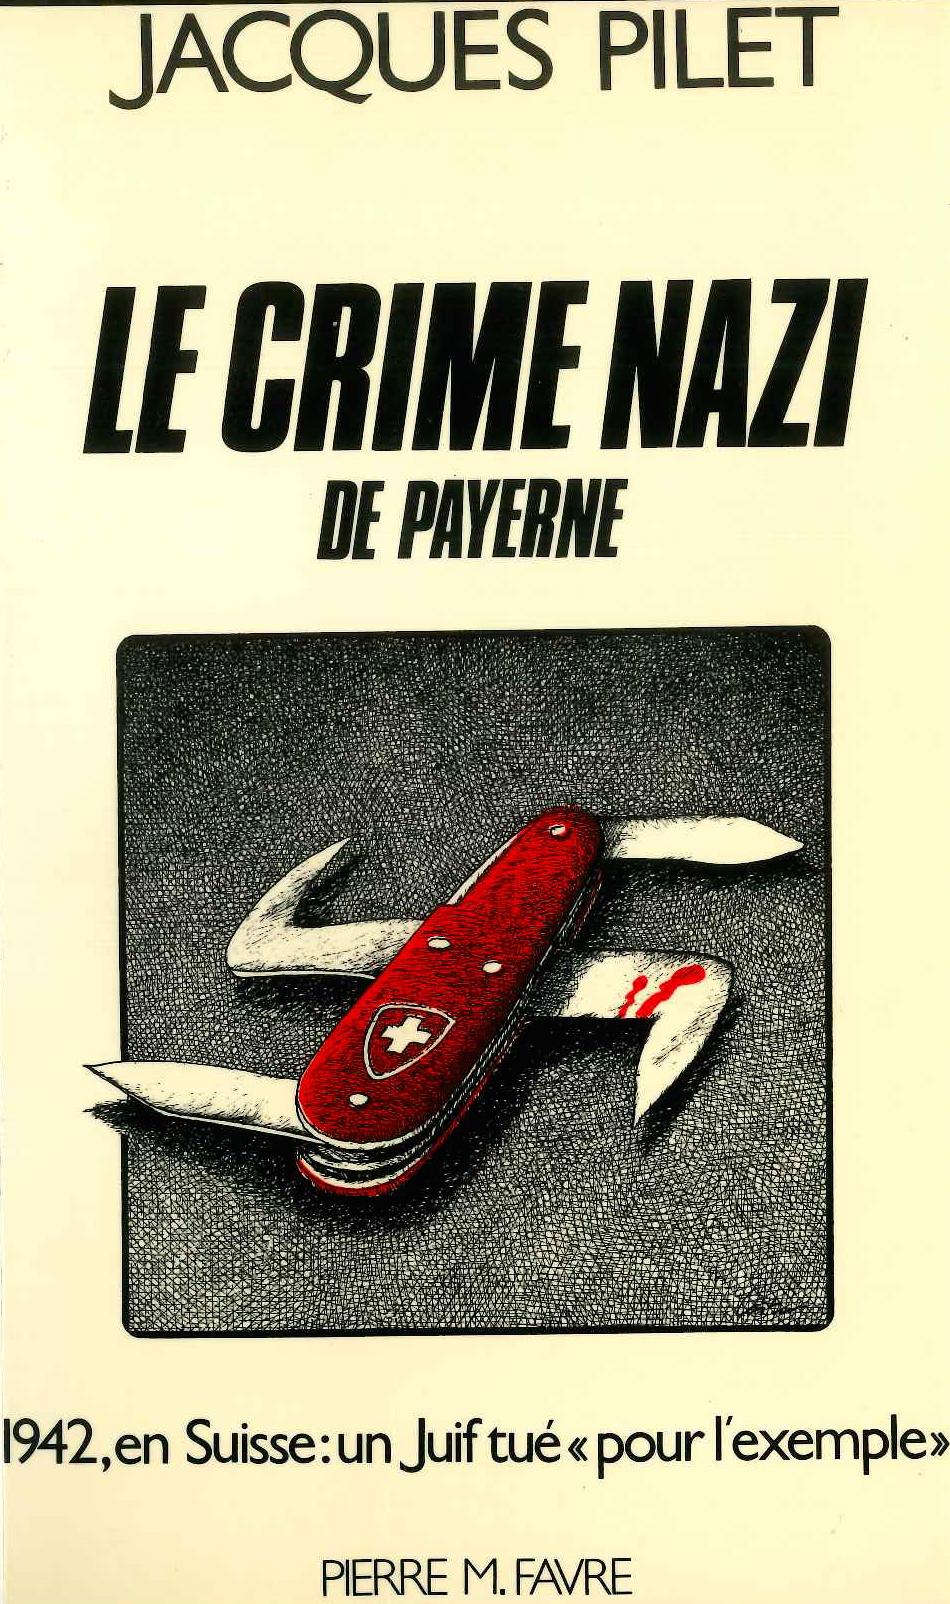 La couverture du livre de Jacques Pilet sur "Le crime nazi de Payerne". [RTS]